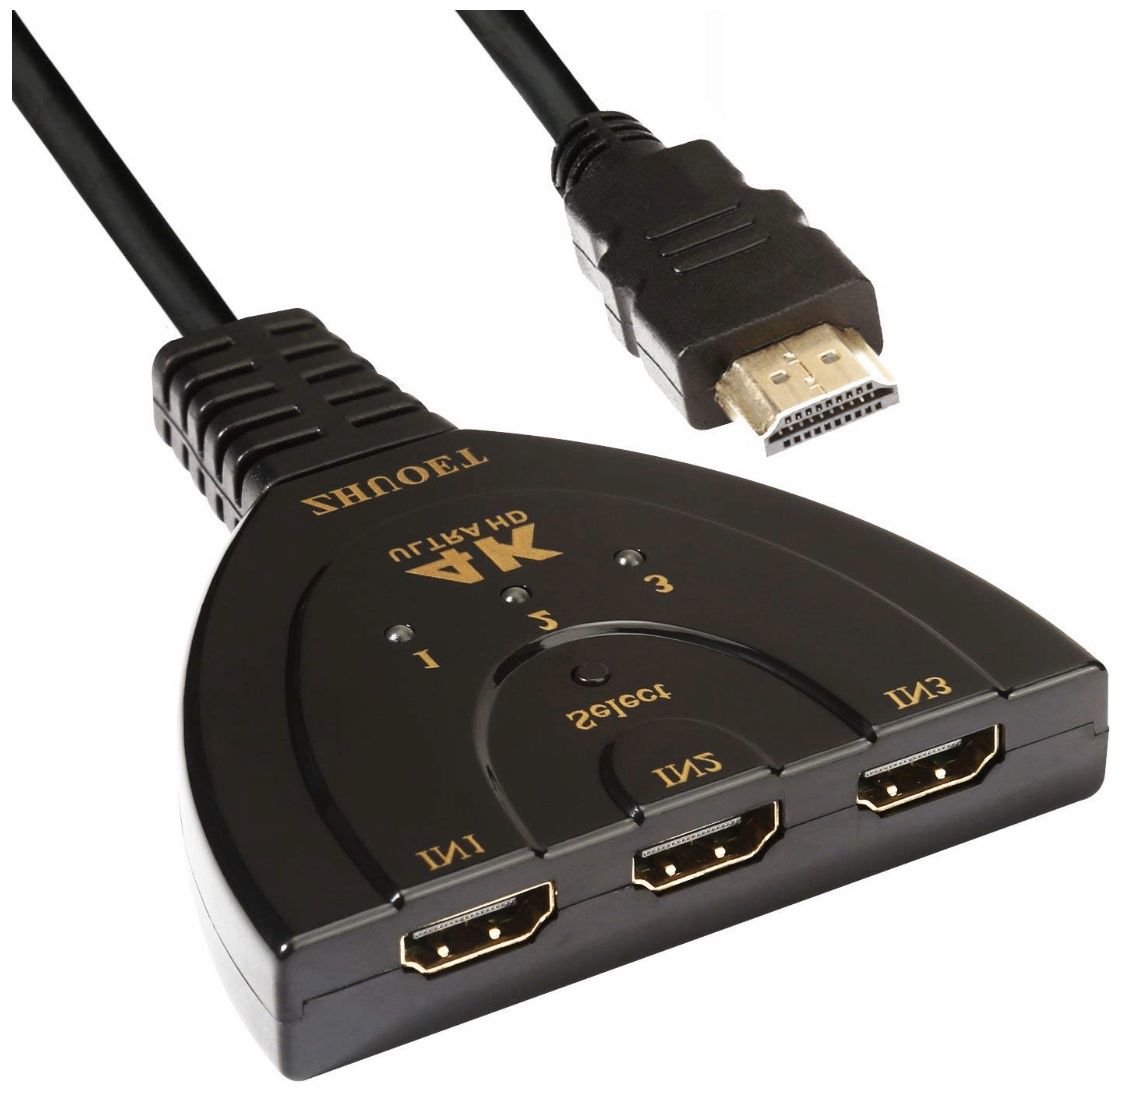 HDMI Adapter, USB 3.1 Type C Hub to 4K HDMI Digital AV Multiport Adapter(Black)